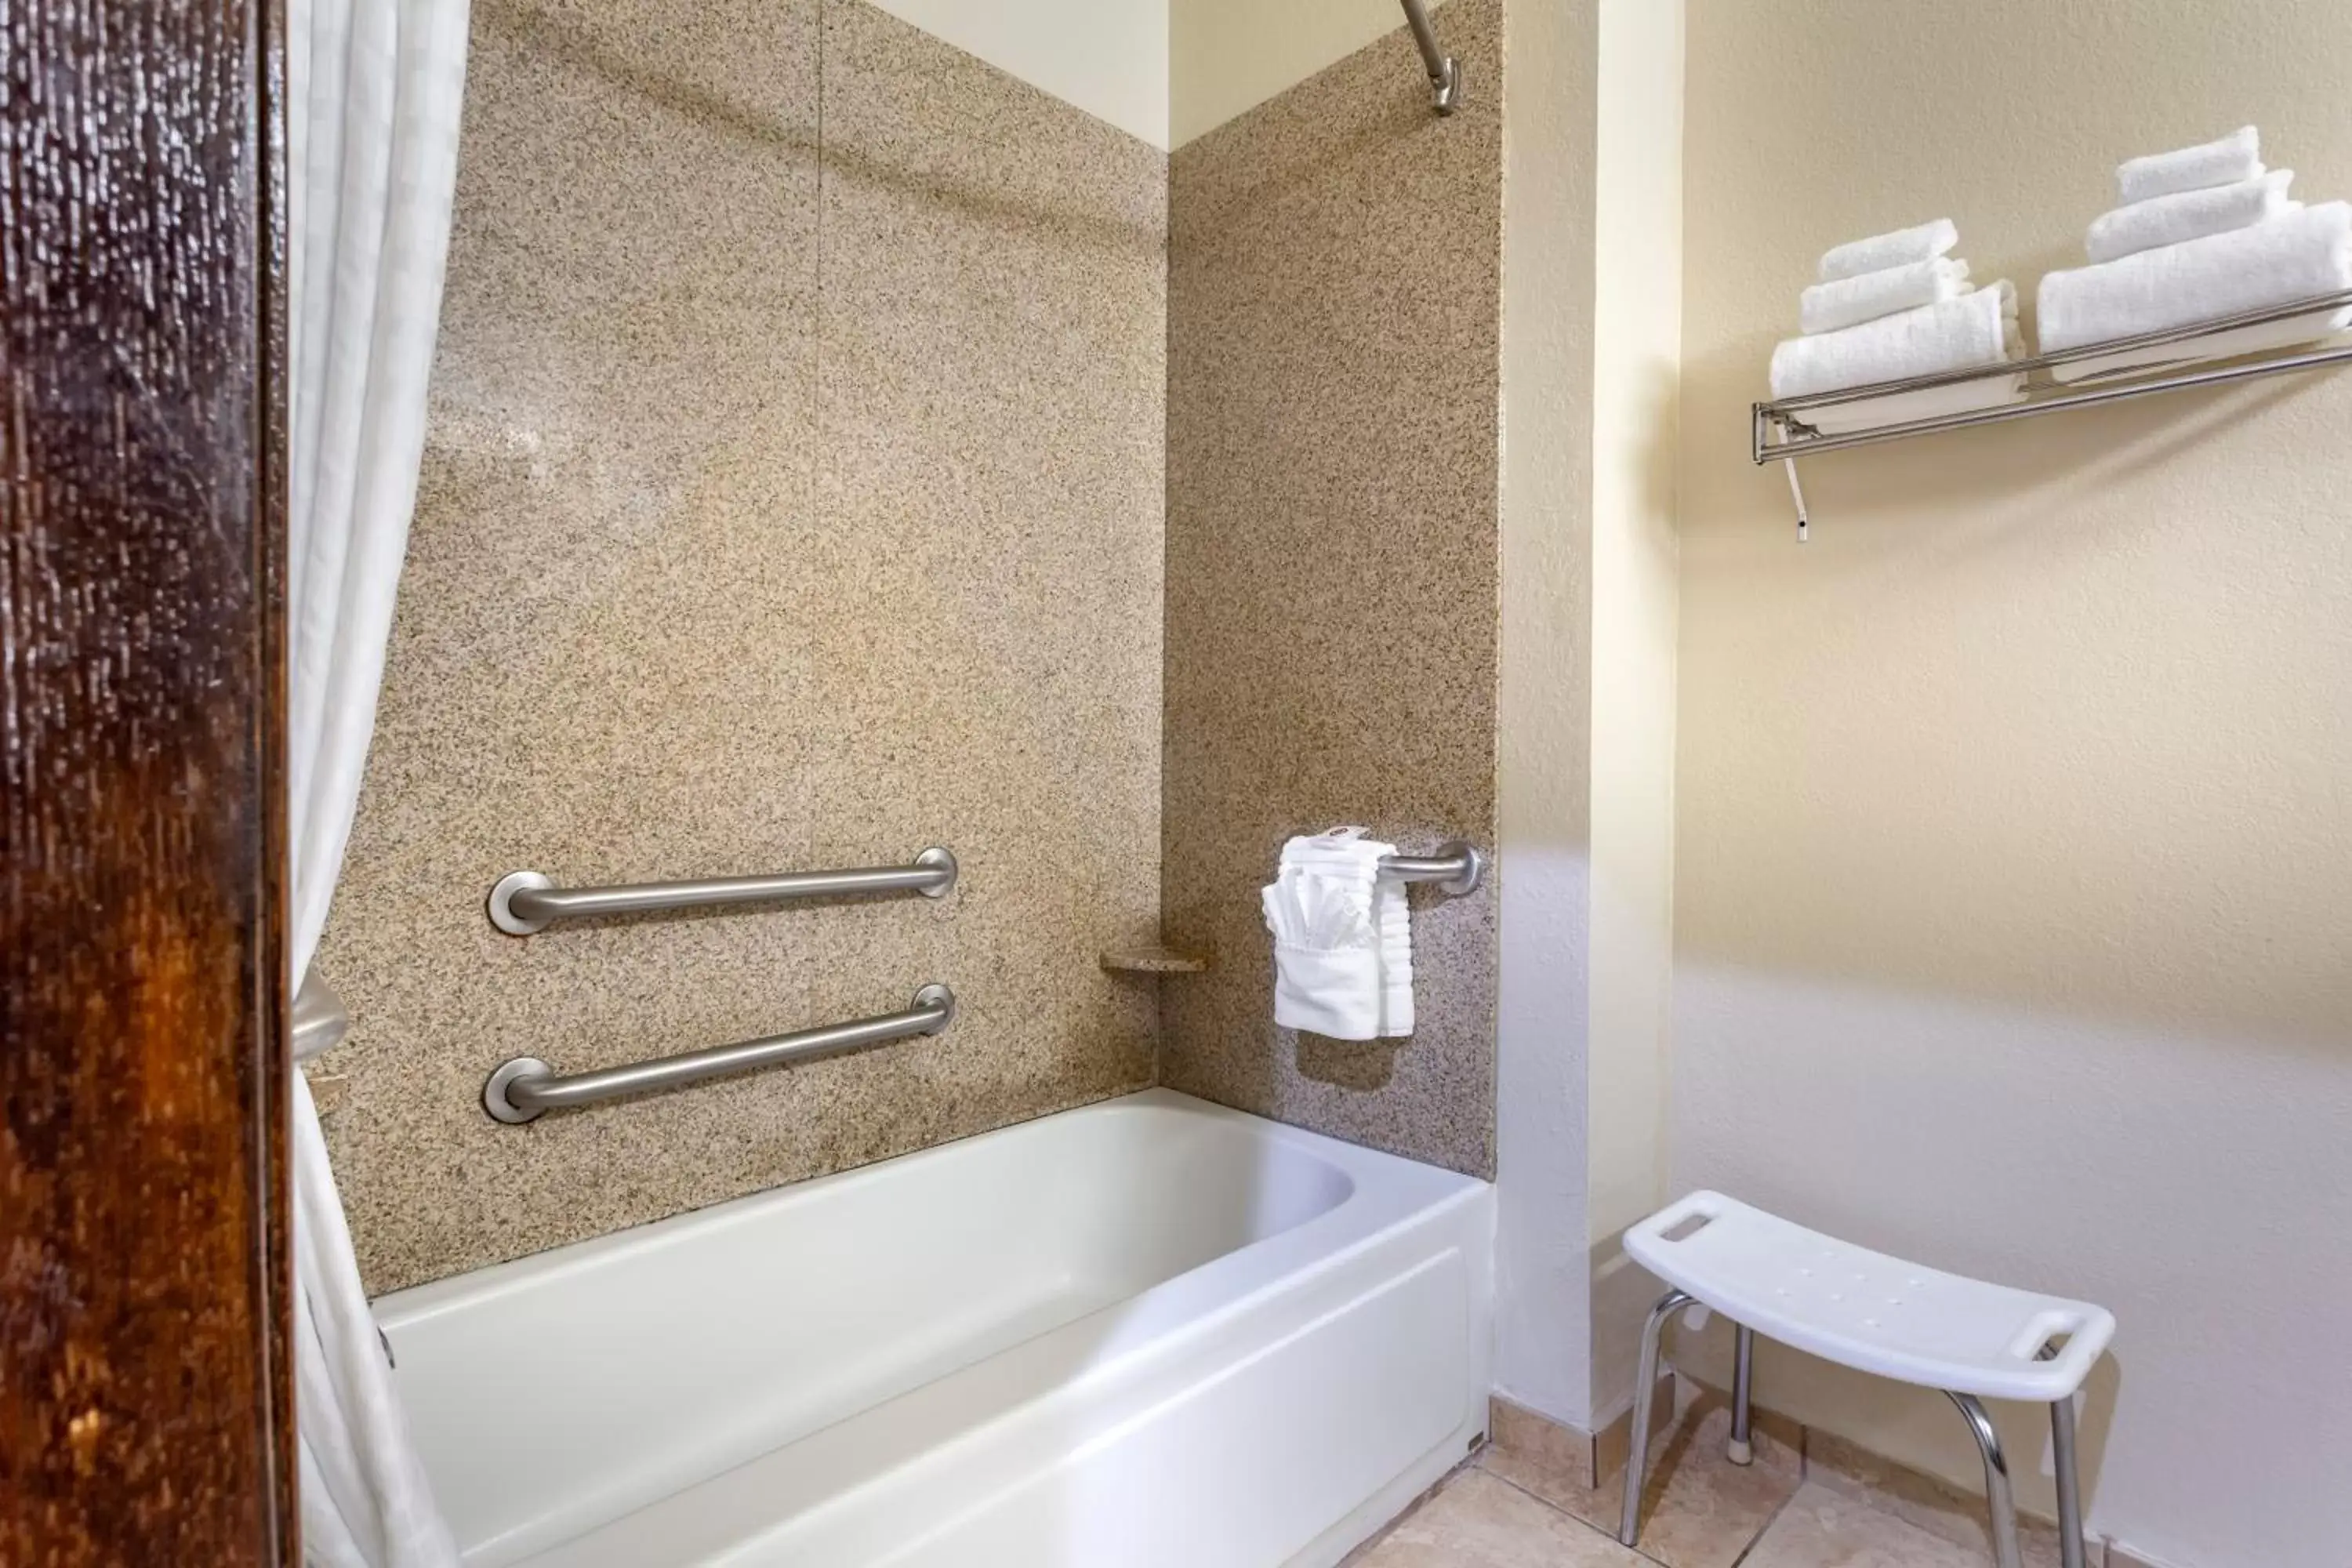 Bathroom in Comfort Inn Hobart - Merrillville